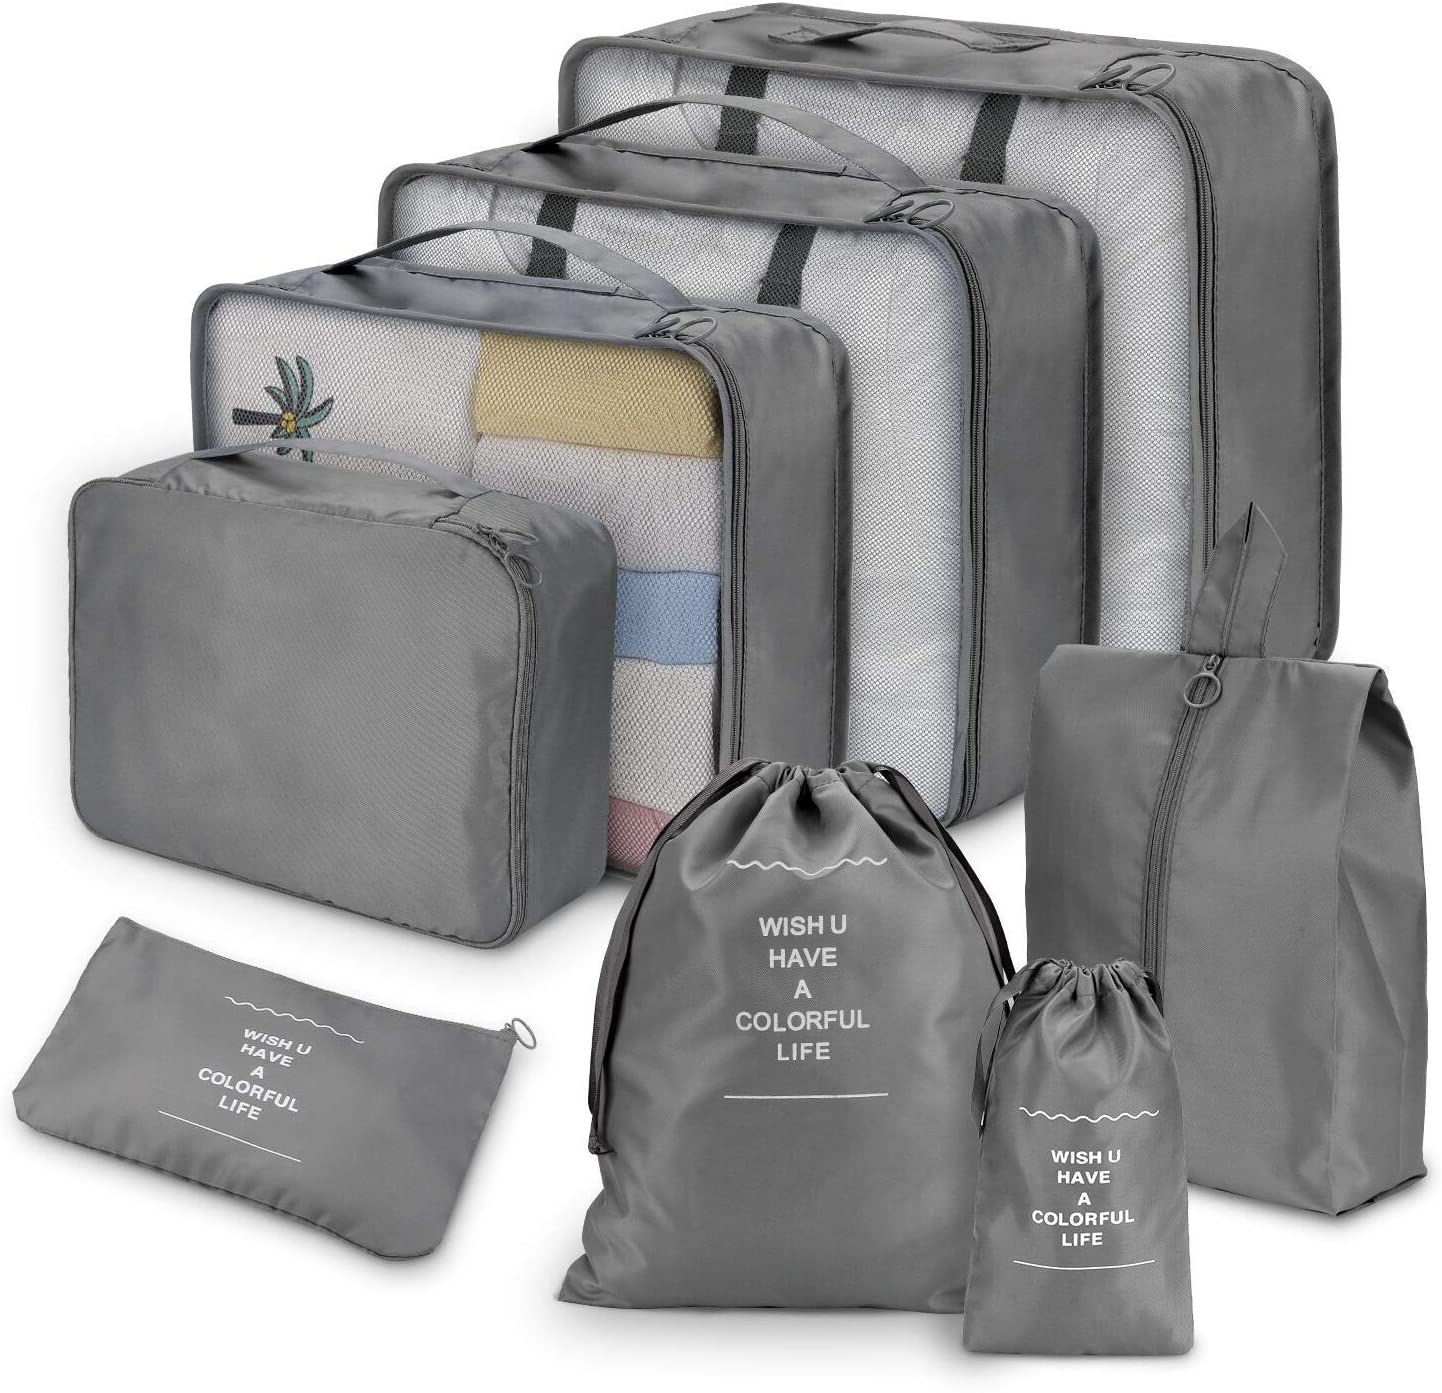 7tlg Set Kofferorganizer Reisetaschen Verpackungswürfel Wäschesack Reisegepäck 